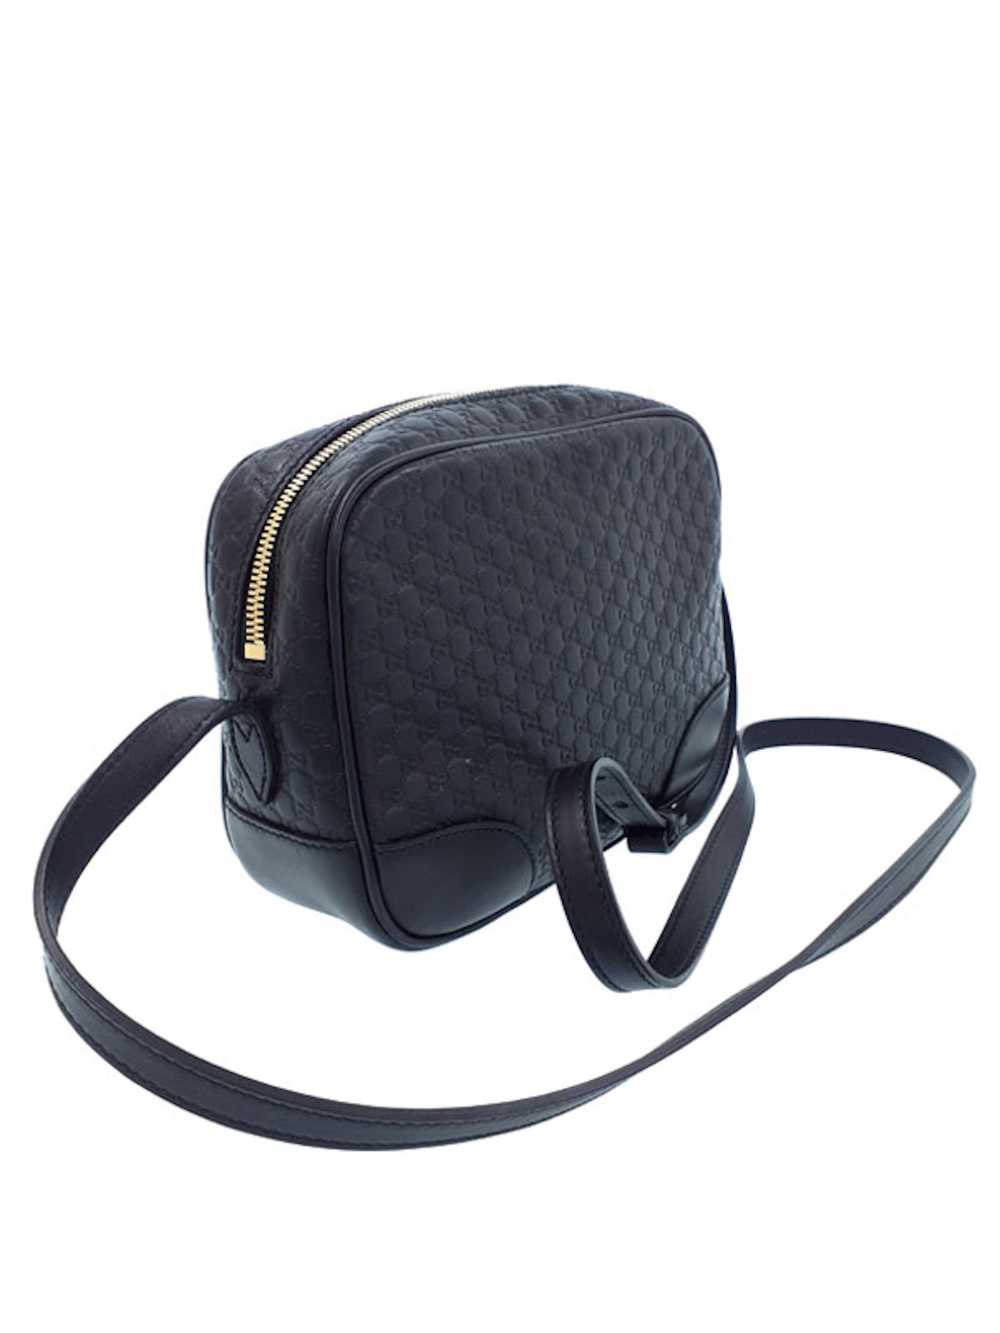 Gucci Gucci Micro Guccisima Shoulder Bag Black - image 2